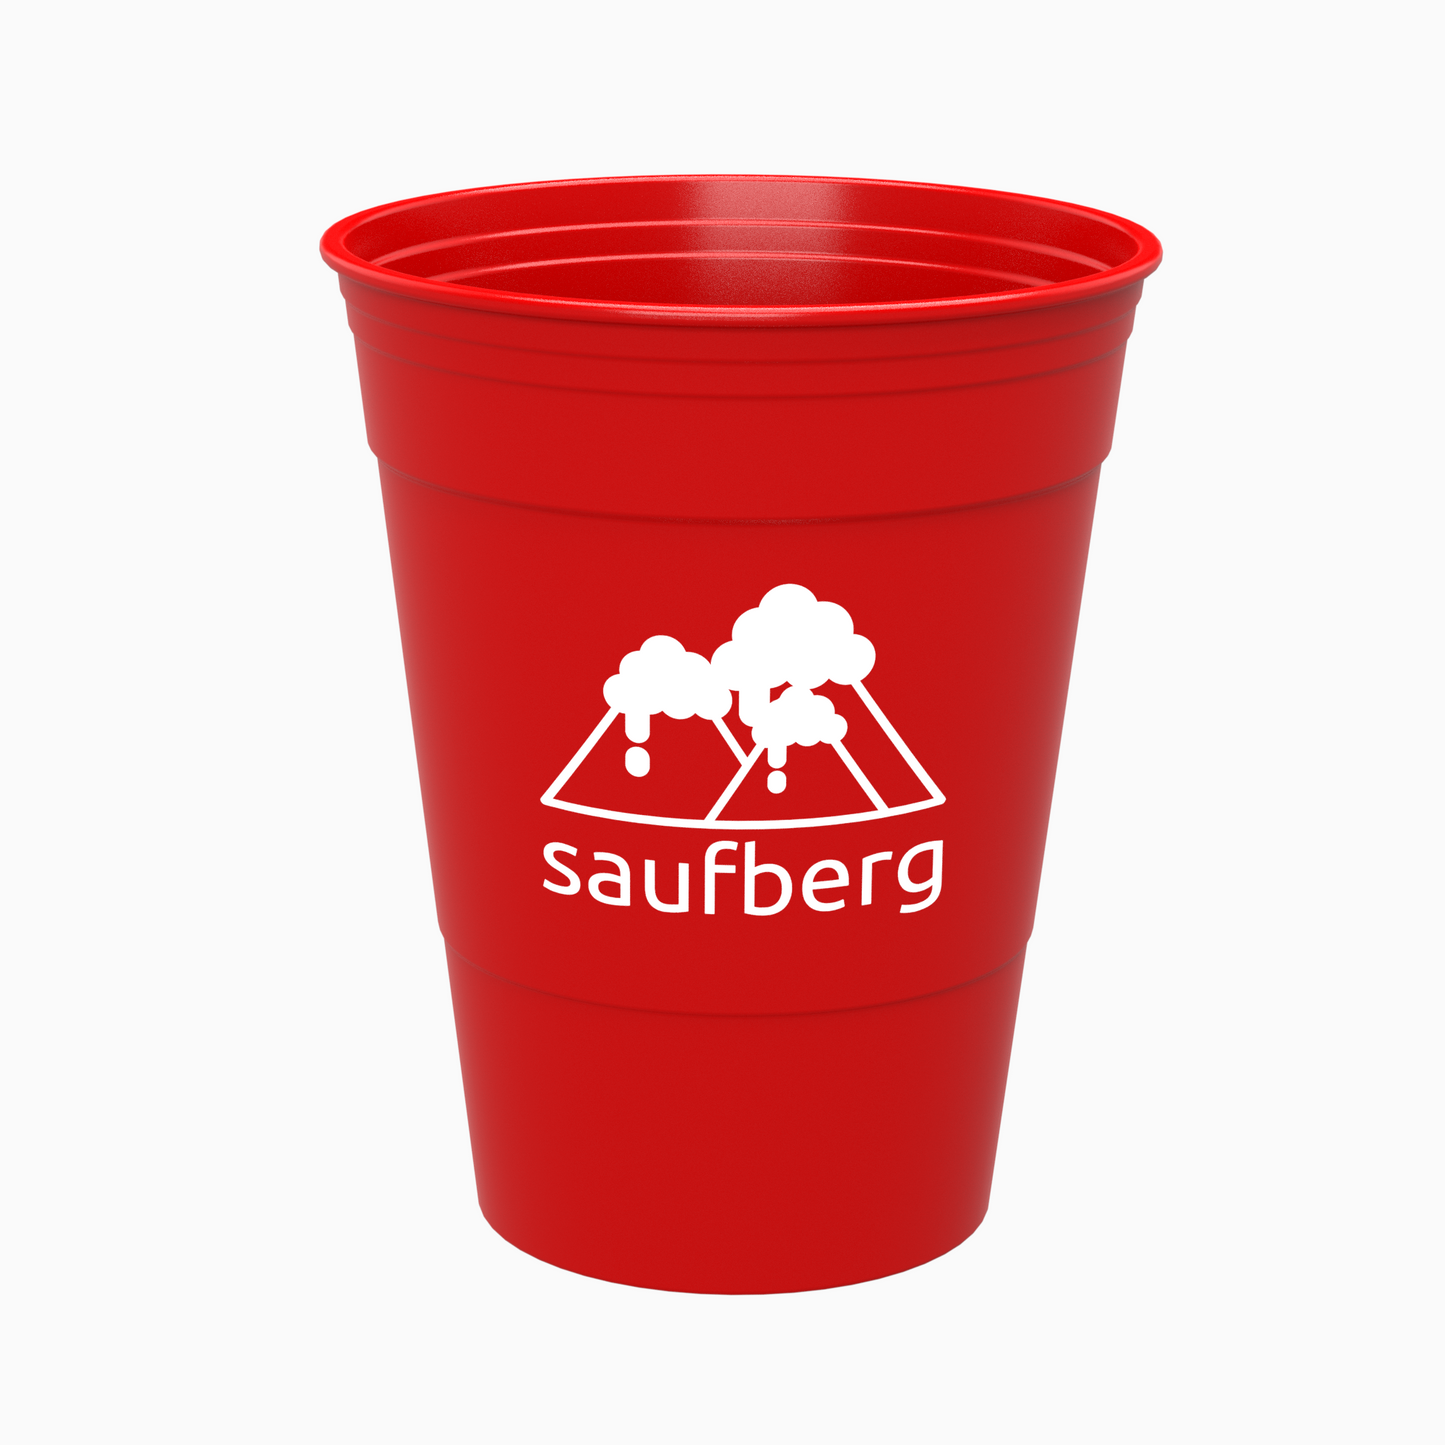 Roter original Mehrweg Bierpong Becher mit weißem saufberg Logo Aufdruck. Ein Red Cup, wie man ihn aus College-Filmen kennt.